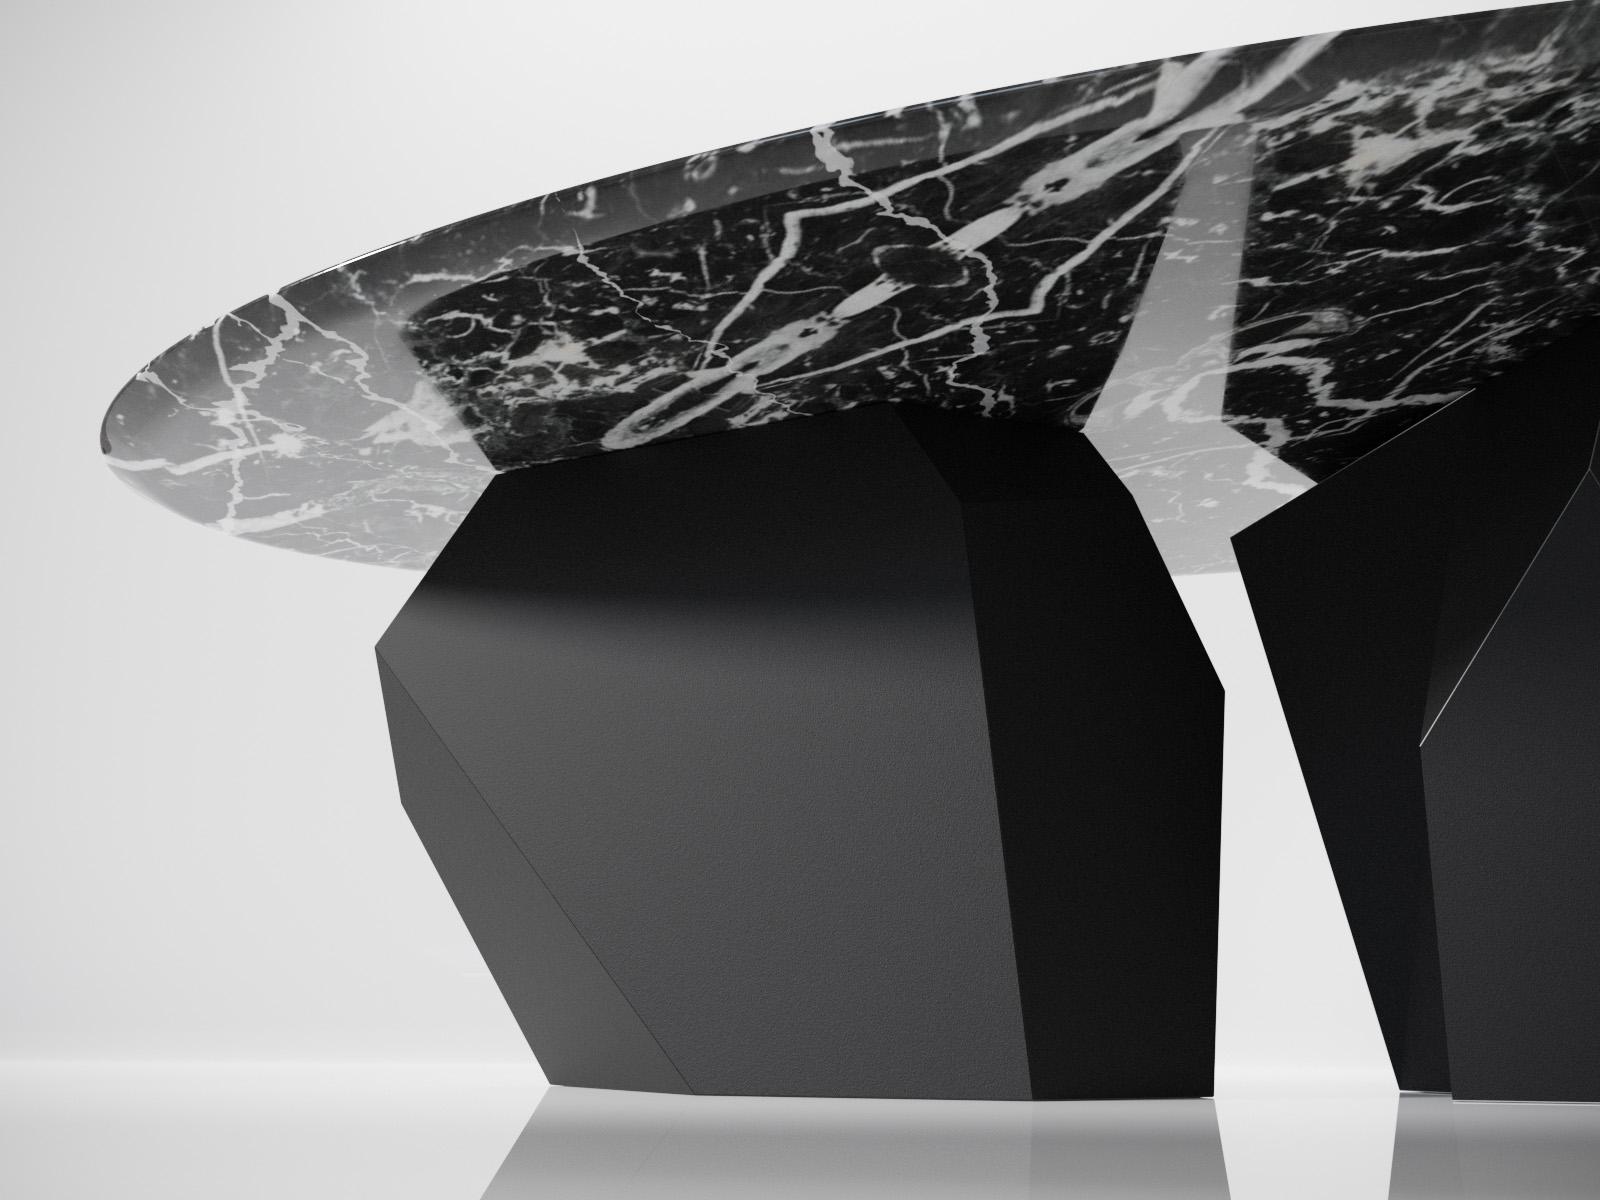 Kronos est le dernier né des meubles modernes conçus par Duffy London. Une table basse unique dans la collection Solo d'œuvres sculpturales du designer britannique Chris Duffy. Les matériaux du marbre et du métal se combinent pour former une pièce